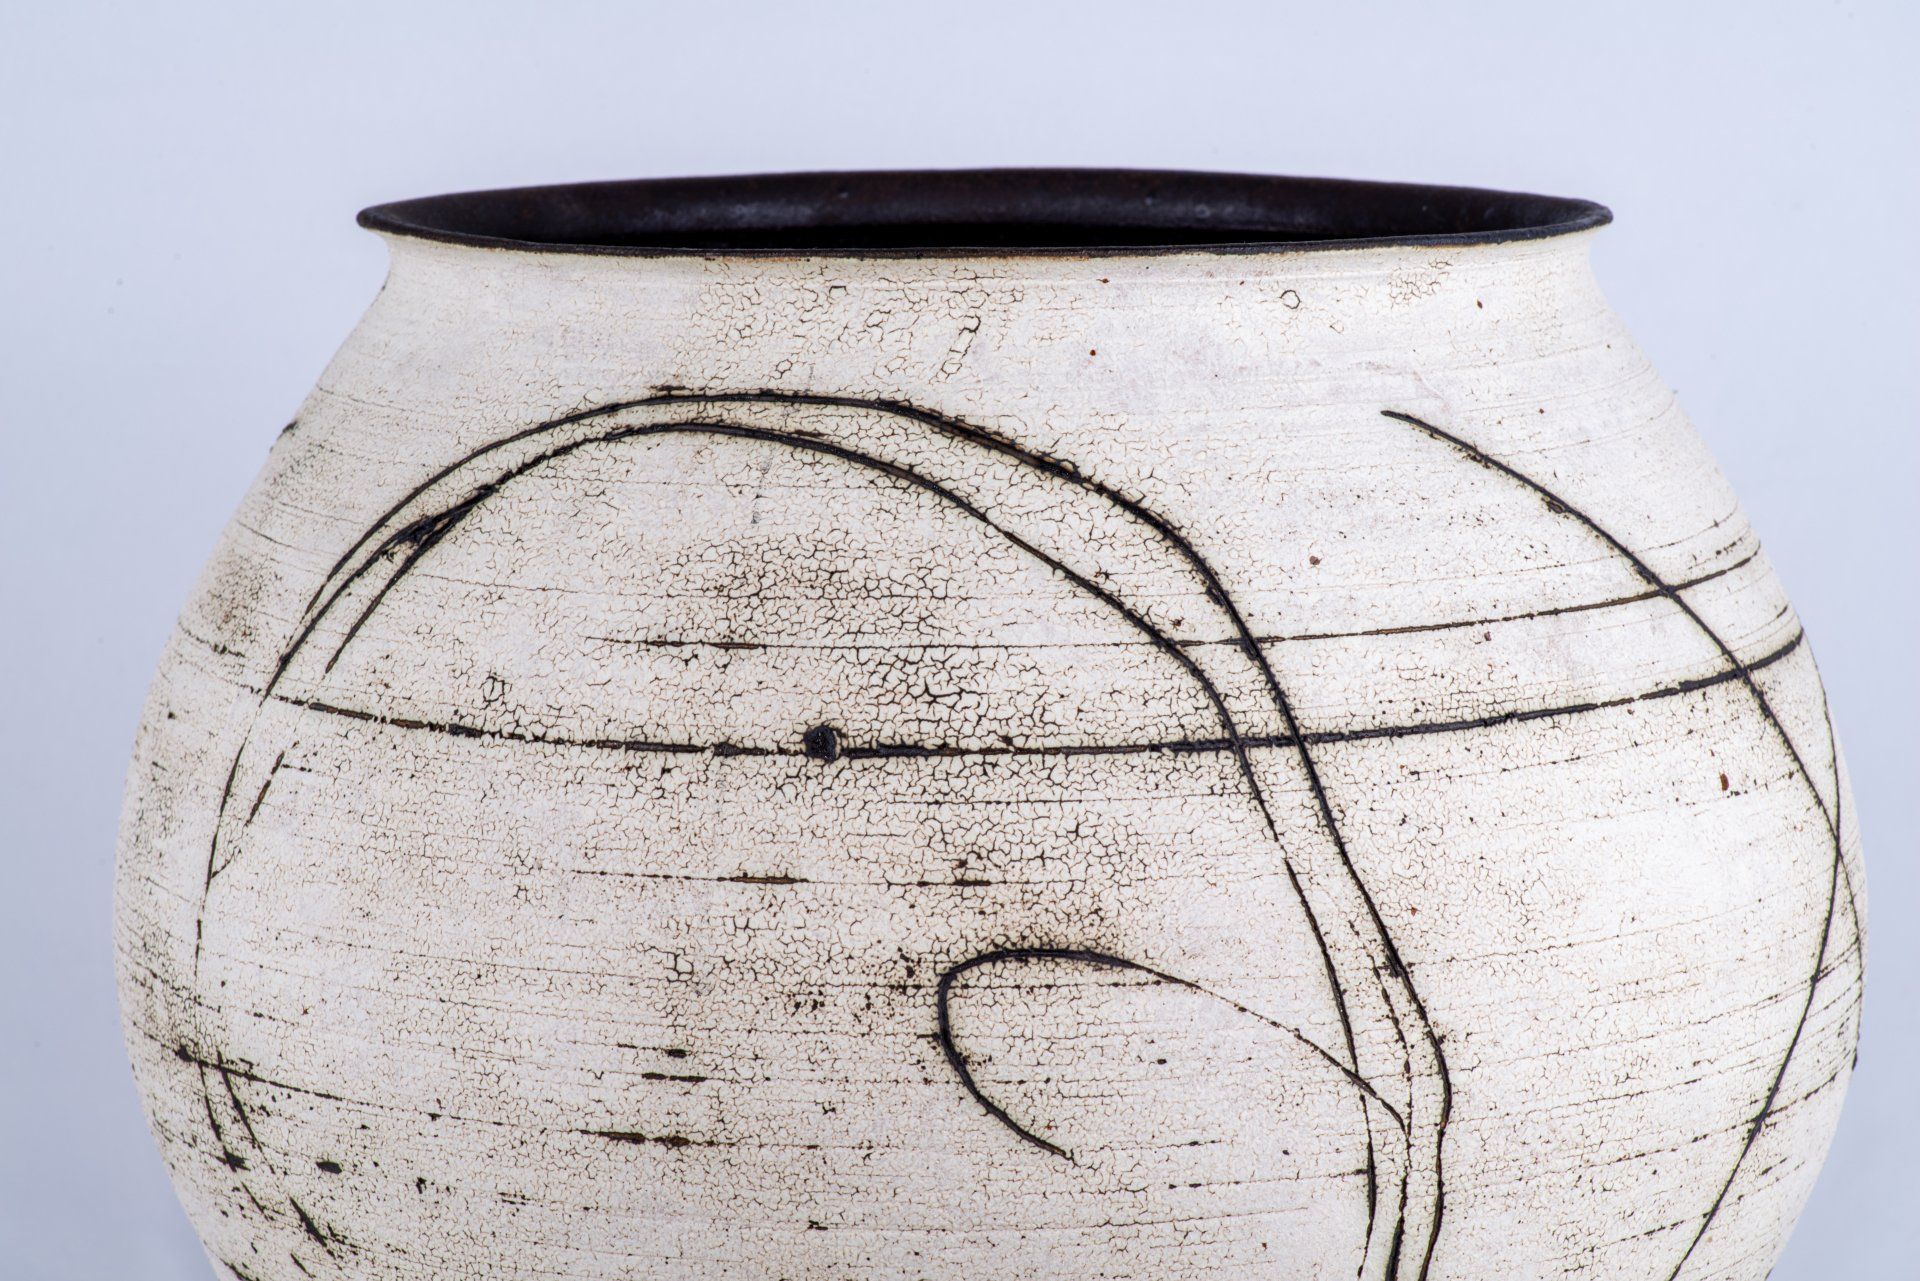 Grand vase en céramique de l'artiste japonais Kansai Noguchi, orné de tracés noirs se détachant sur un fond blanc, avec un intérieur noir. Cette œuvre s'inspire des céramiques anciennes.